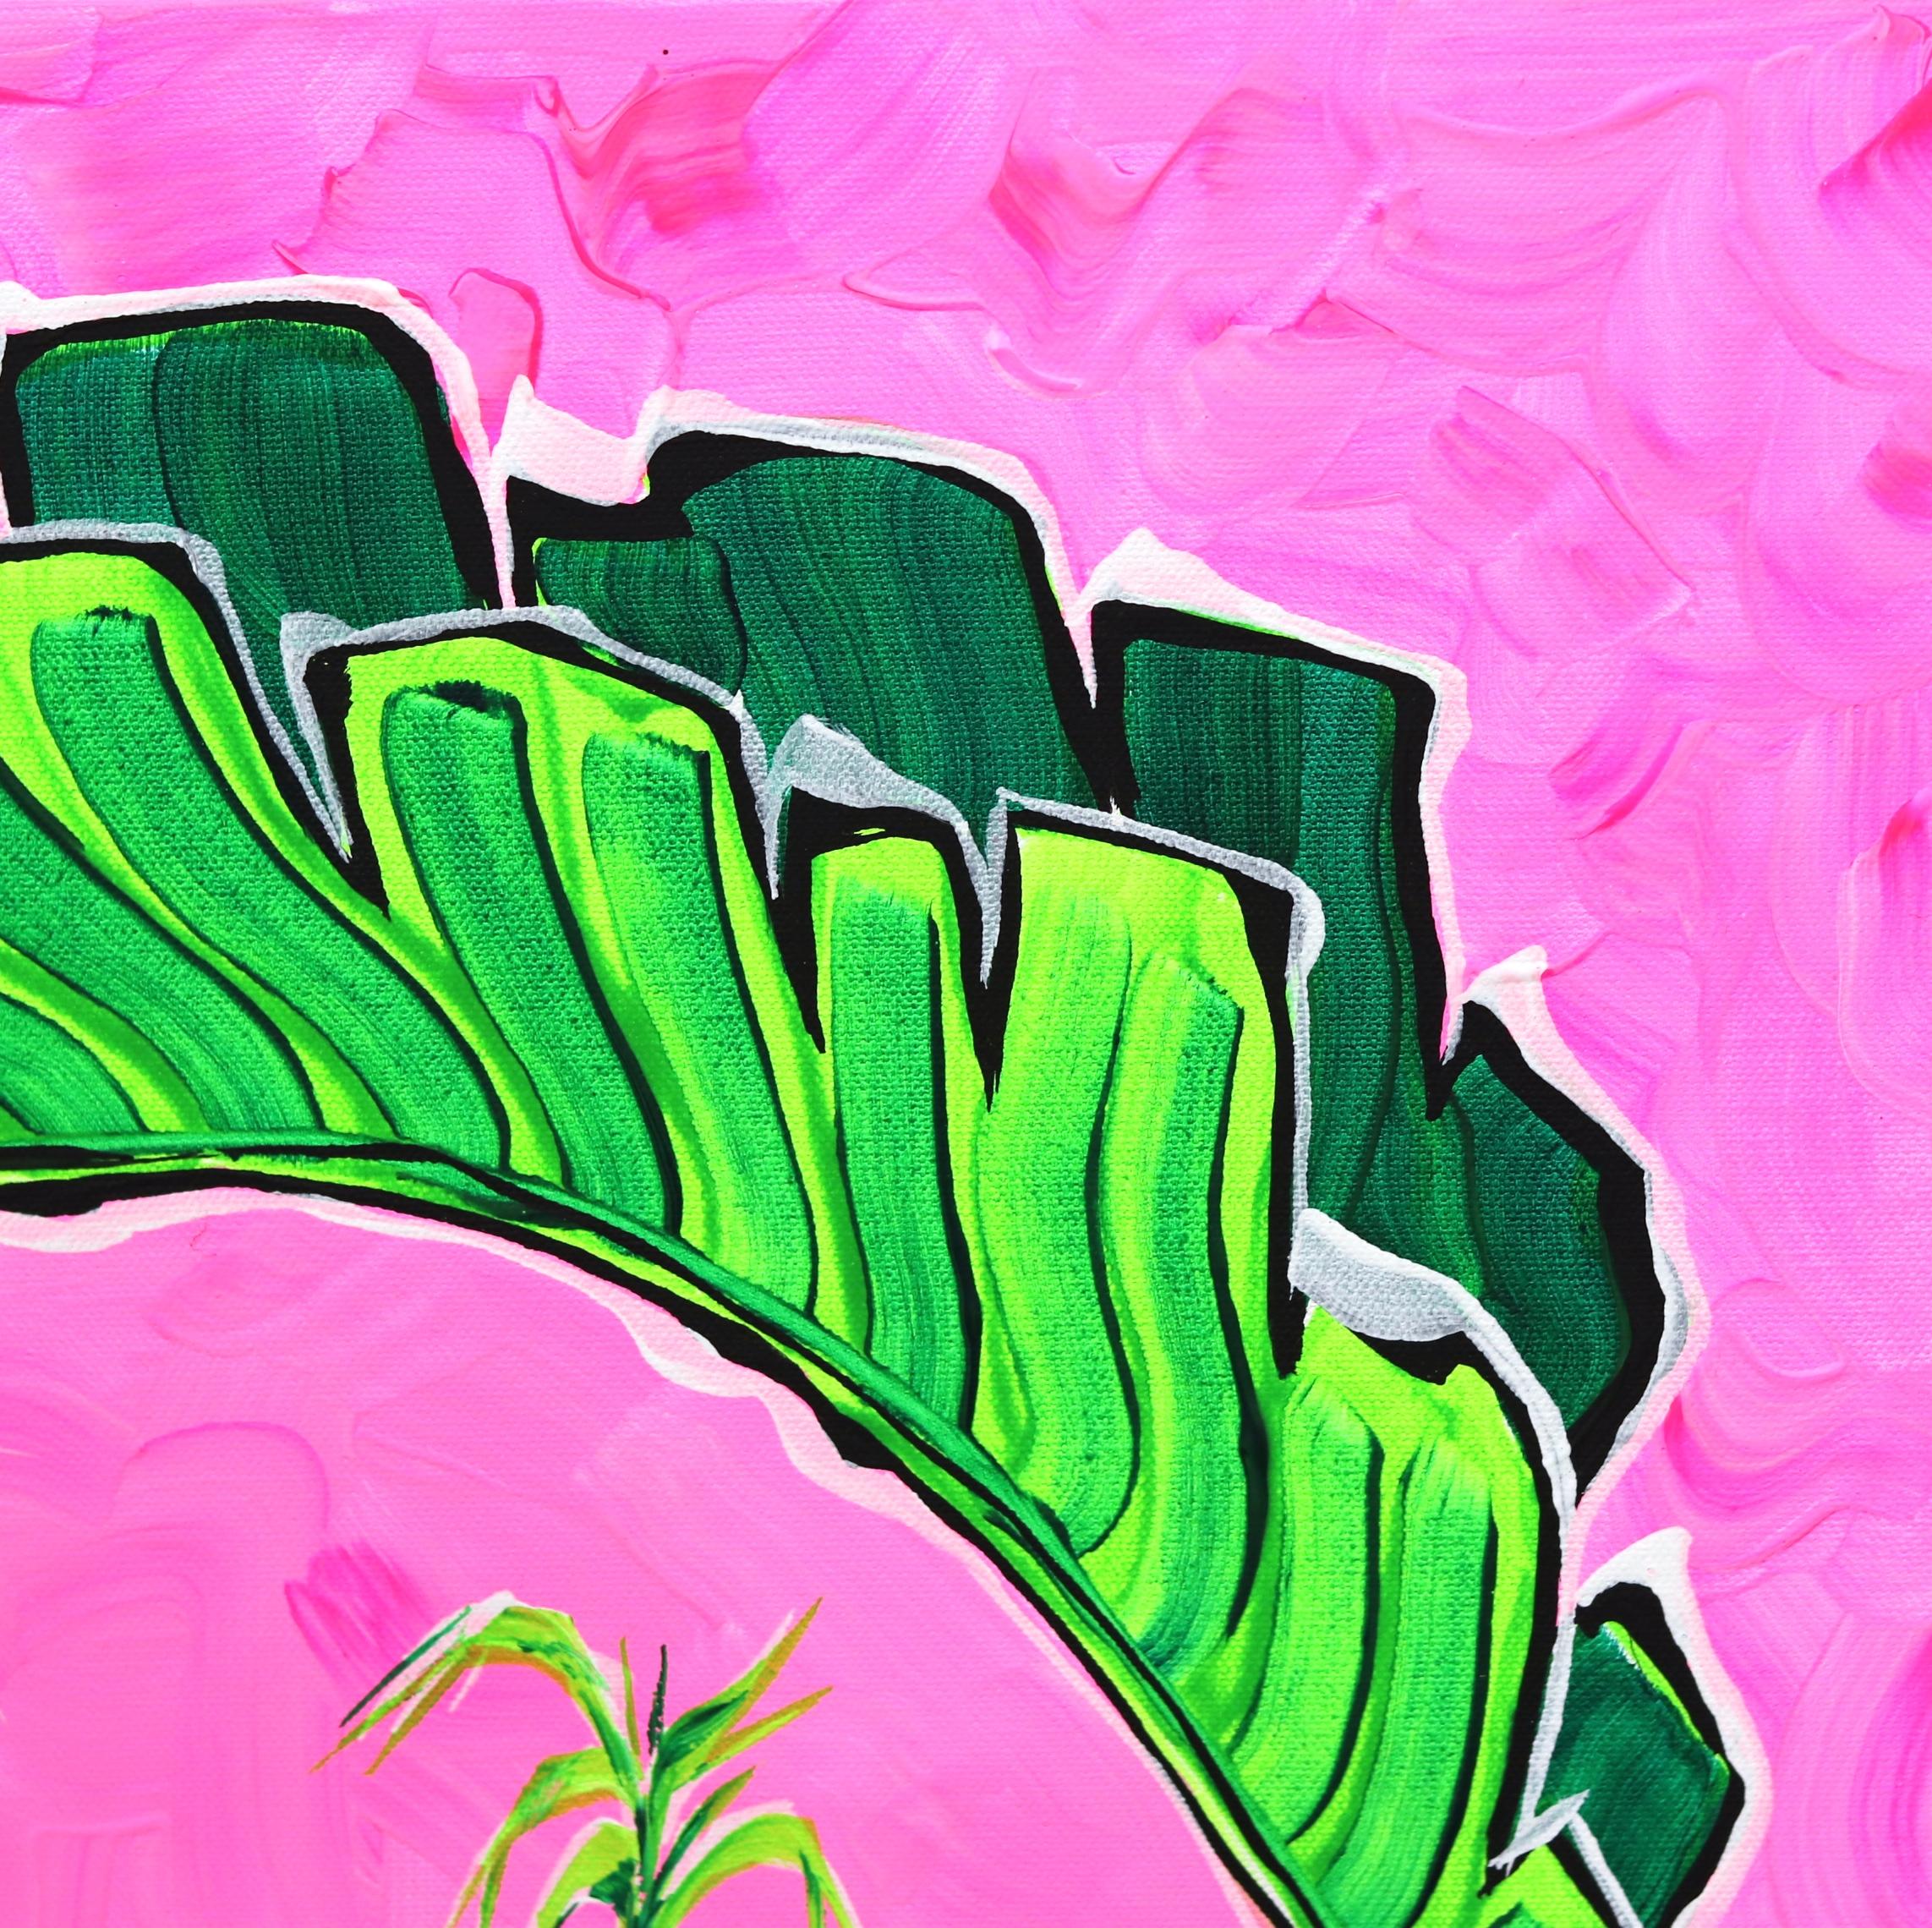 Rosa Himmel I – farbenfrohes, originales, minimalistisches Pop-Art-Gemälde mit architektonischen Details (Pink), Still-Life Painting, von Jonjo Elliott